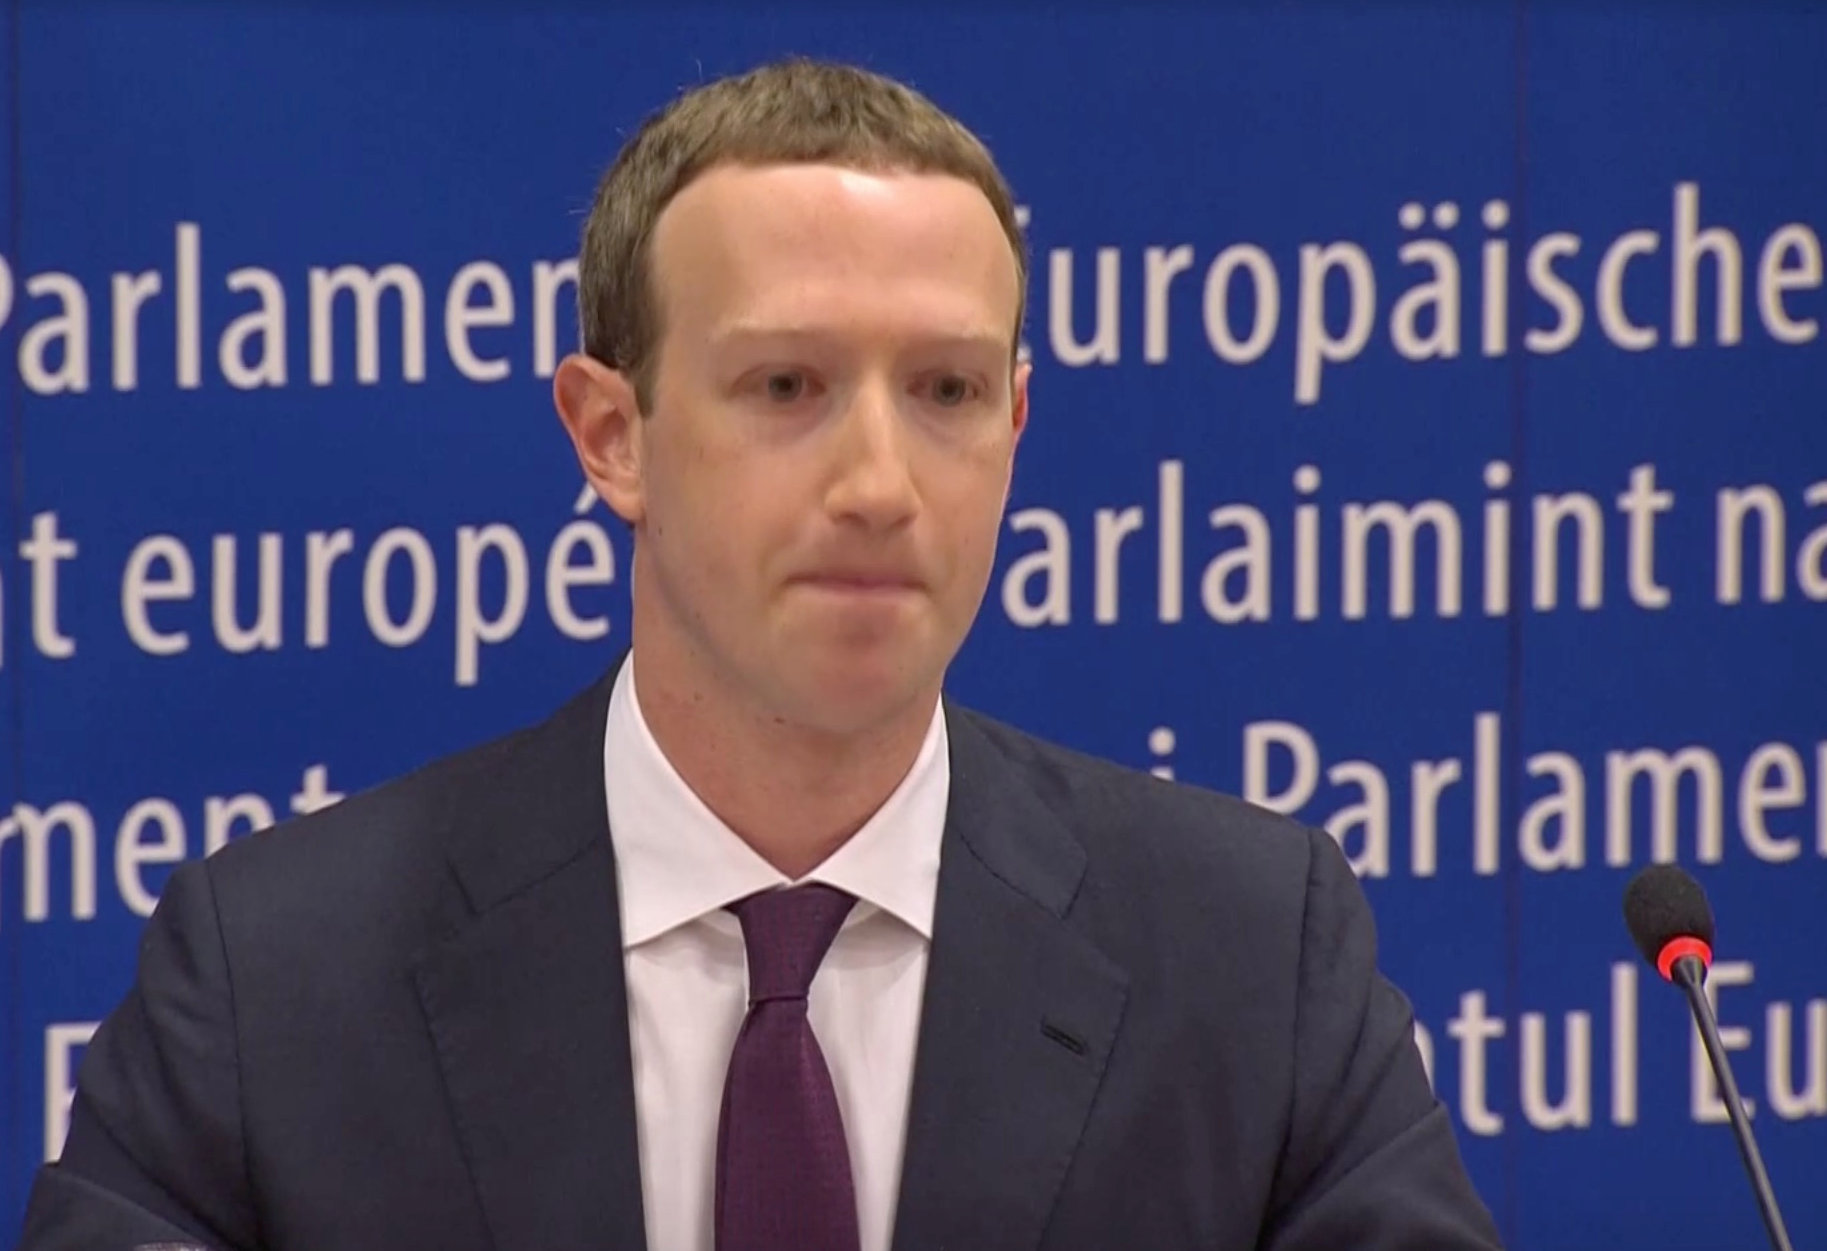 Fundador de Facebook pide perdón en Eurocámara por escándalo de datos personales